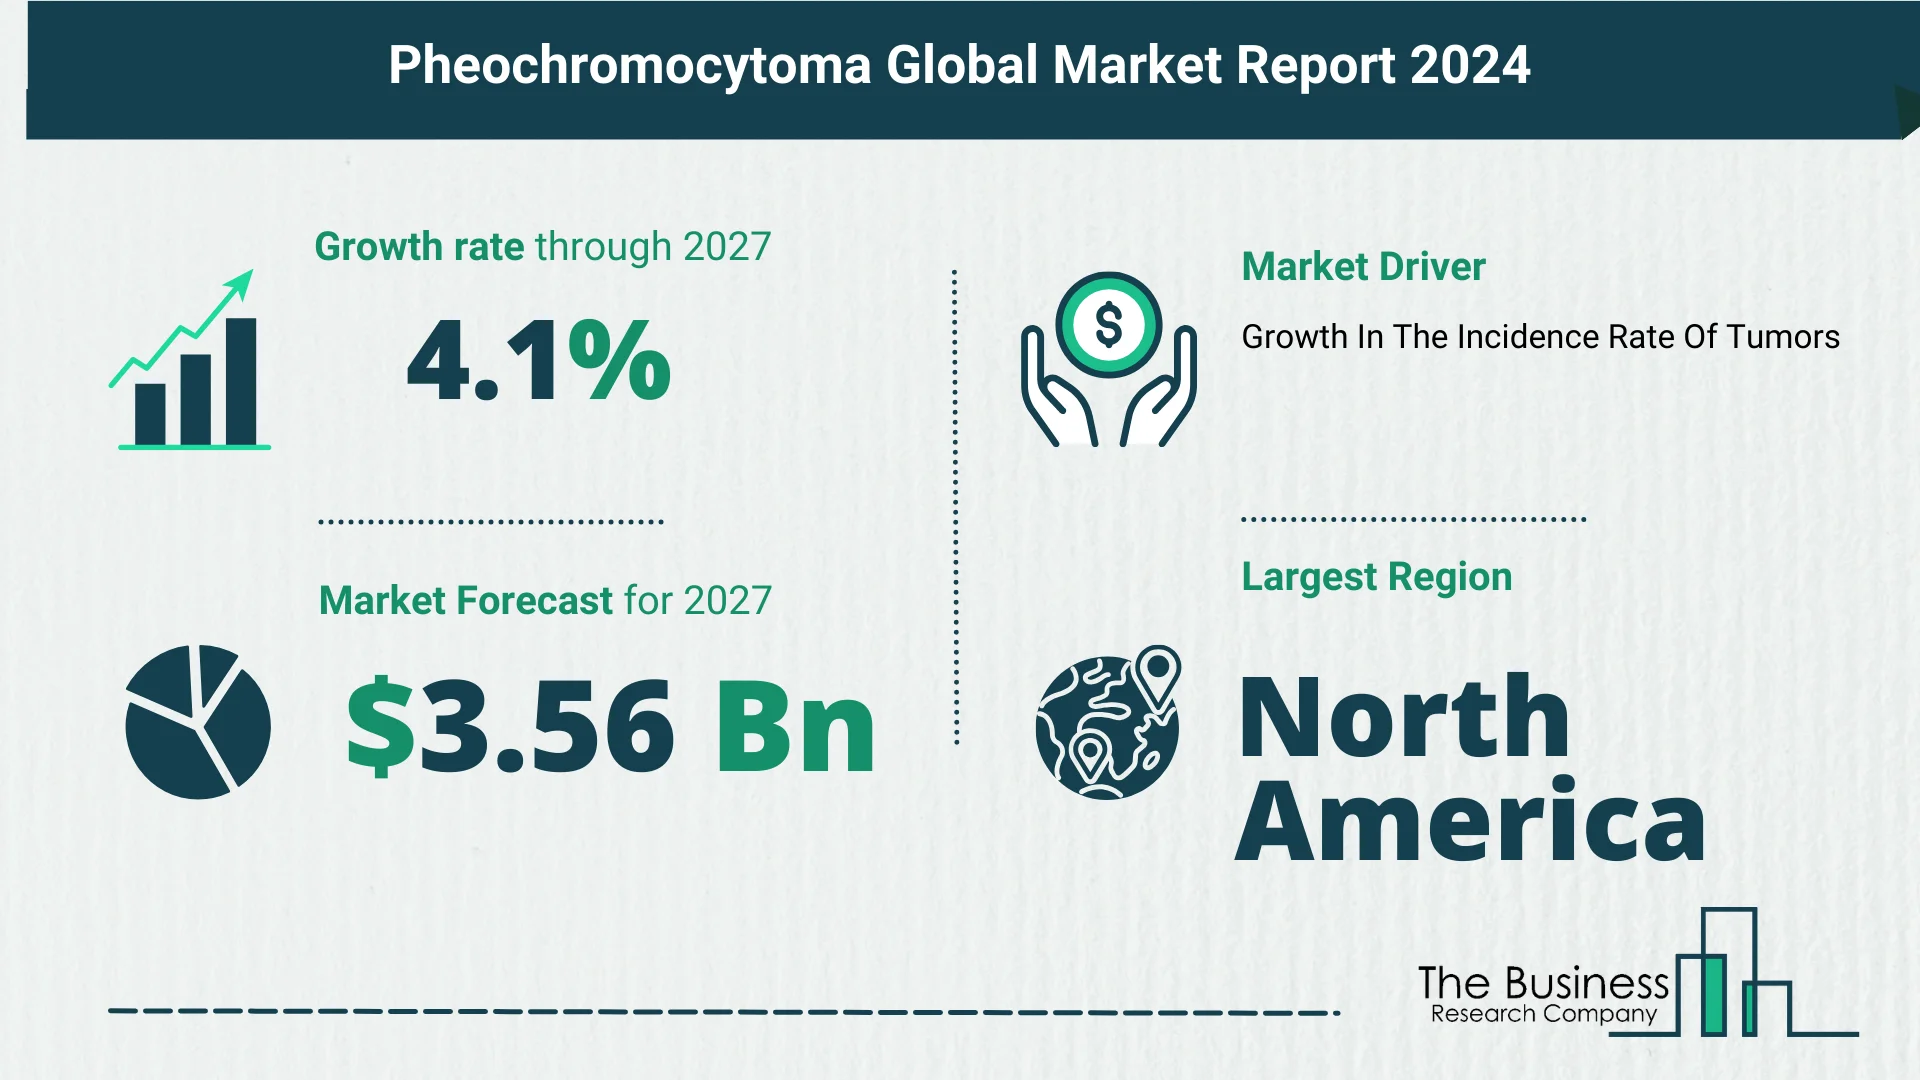 Global Pheochromocytoma Market